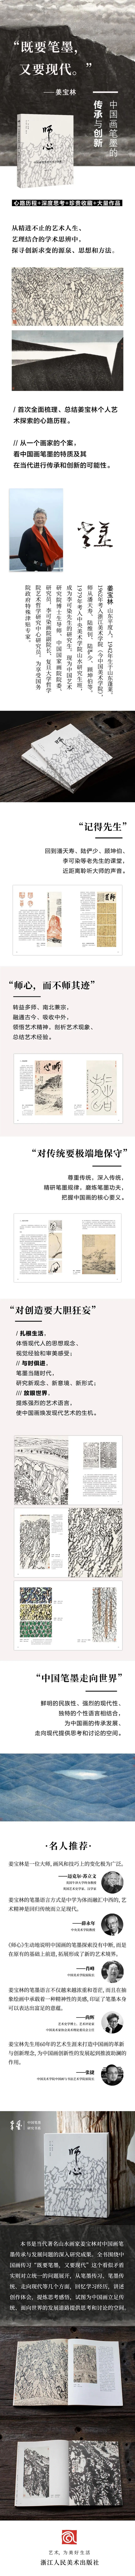 既要笔墨，又要现代 | 著名画家姜宝林“师心——中国画笔墨的传承与创新”付梓